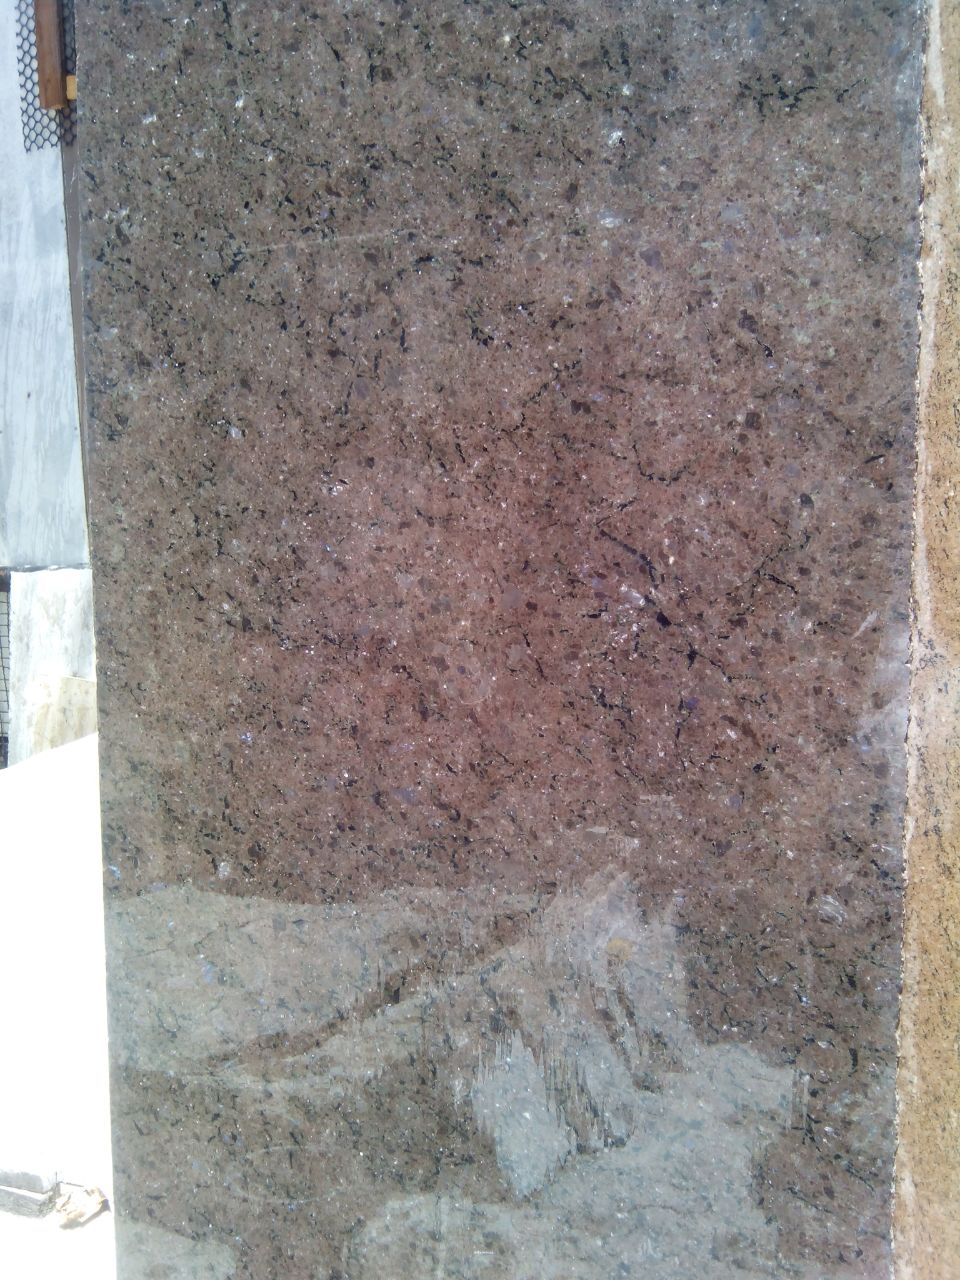 Brown Pearl Granite